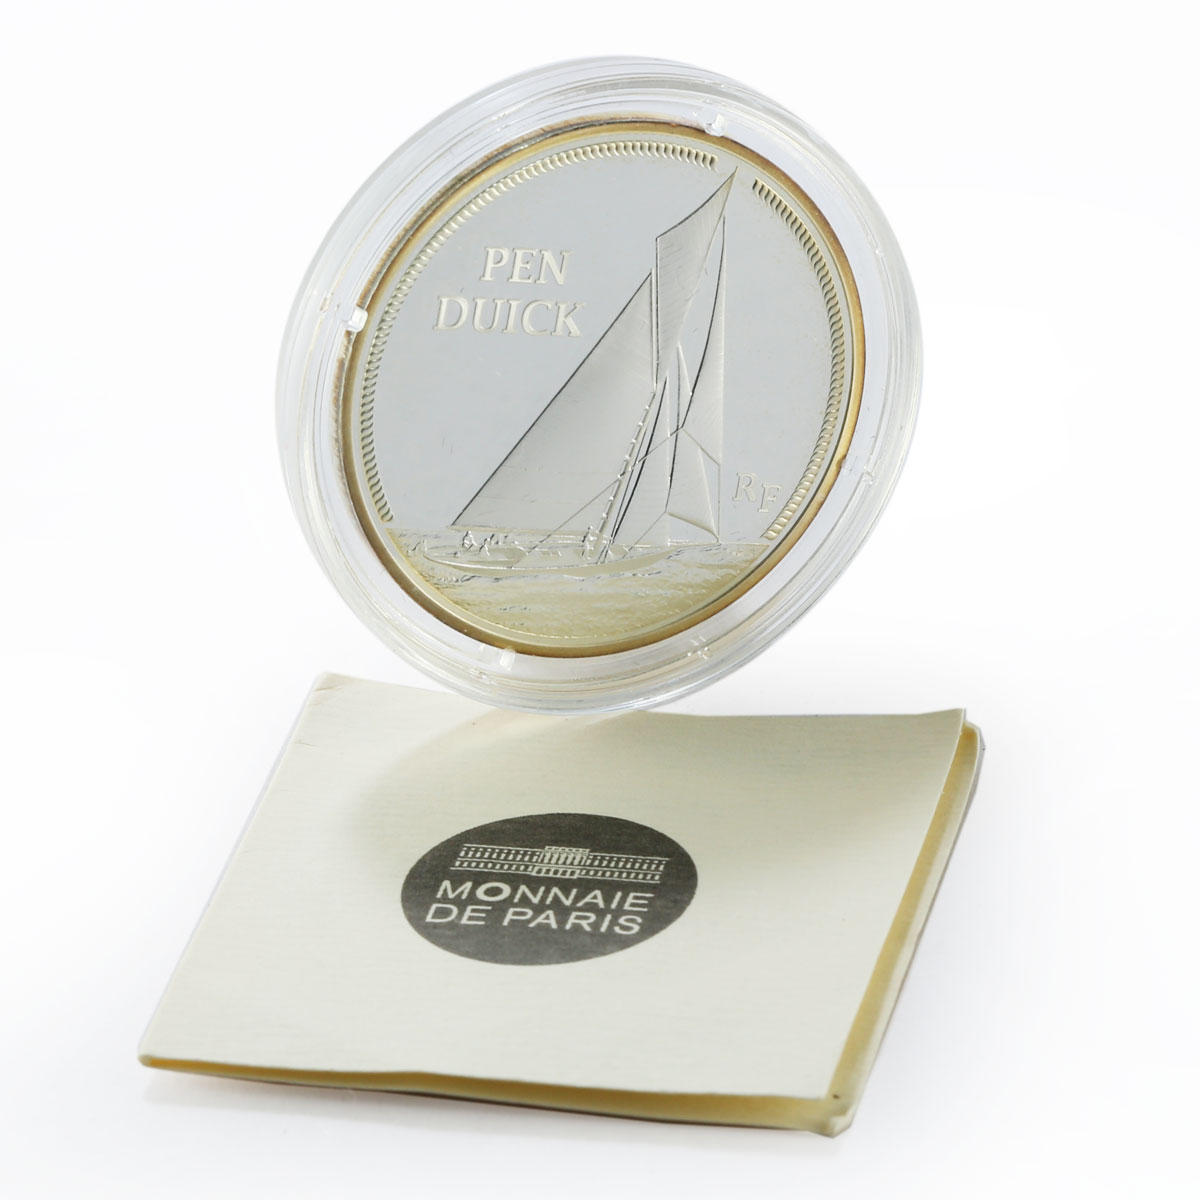 France 10 euro Ship Pen Duck silver proof coin 2013